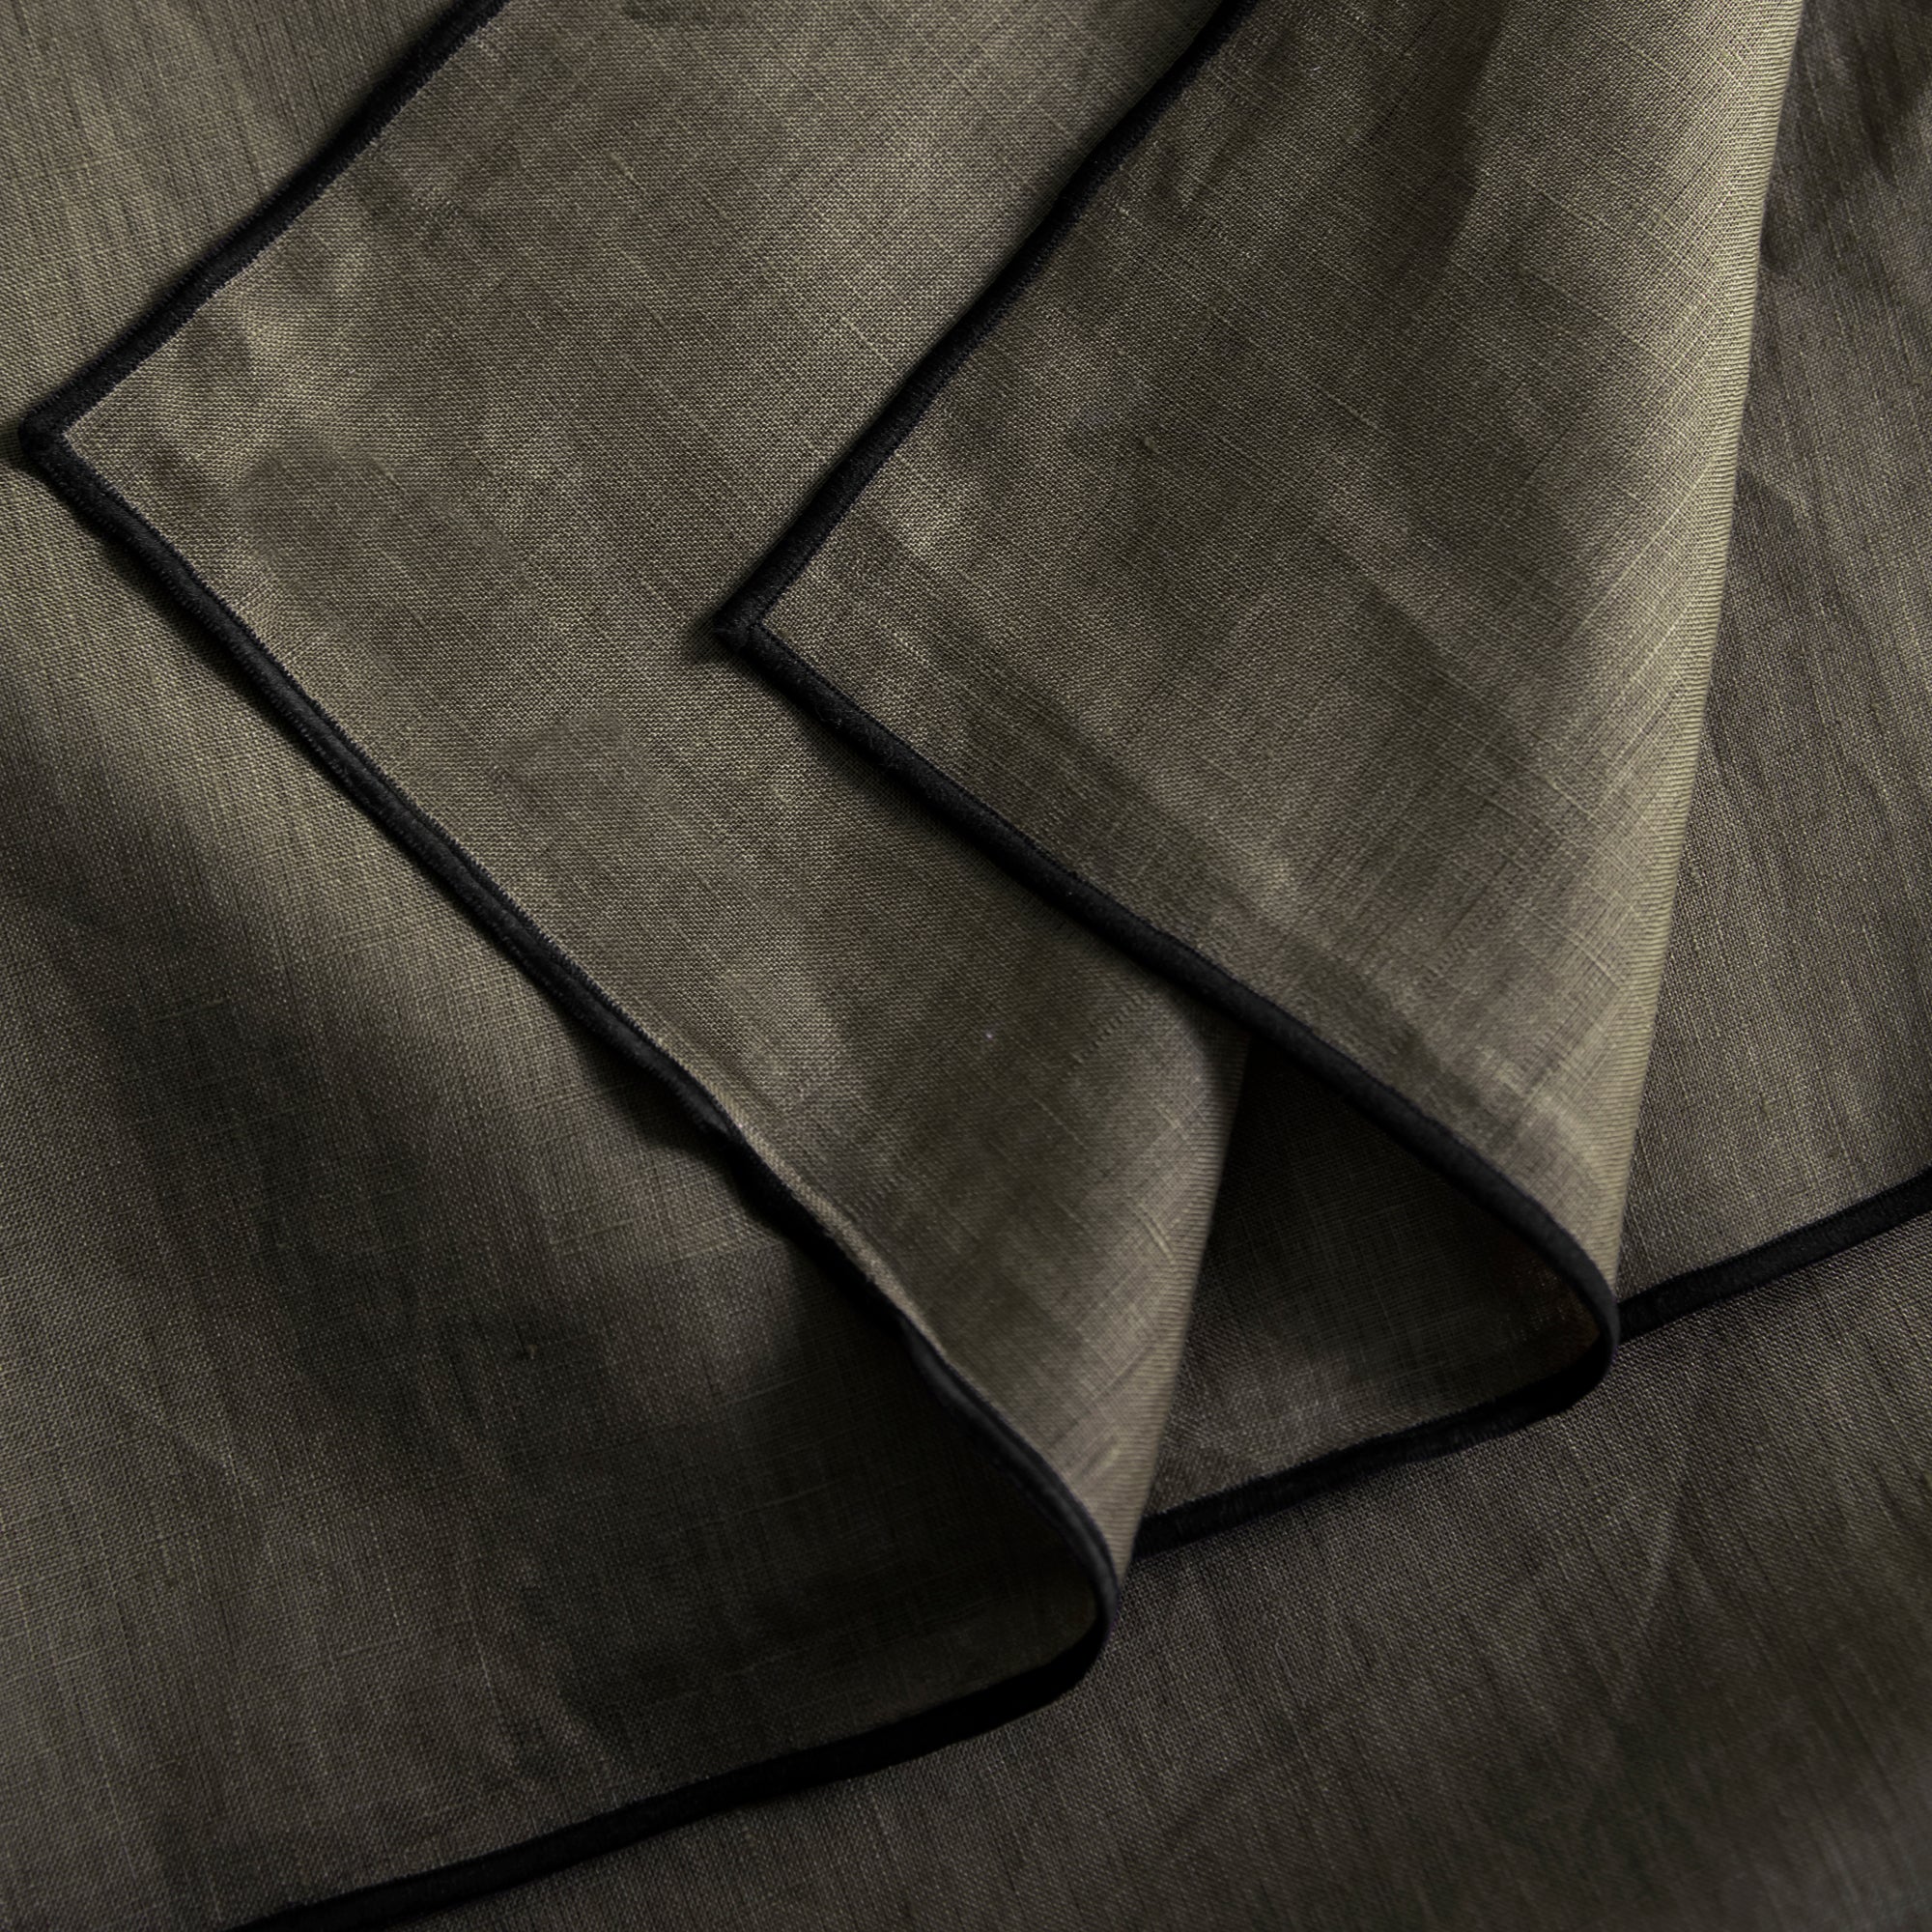 nappe carrée en coton kaki grisé et bourdon noir 170x170 cm